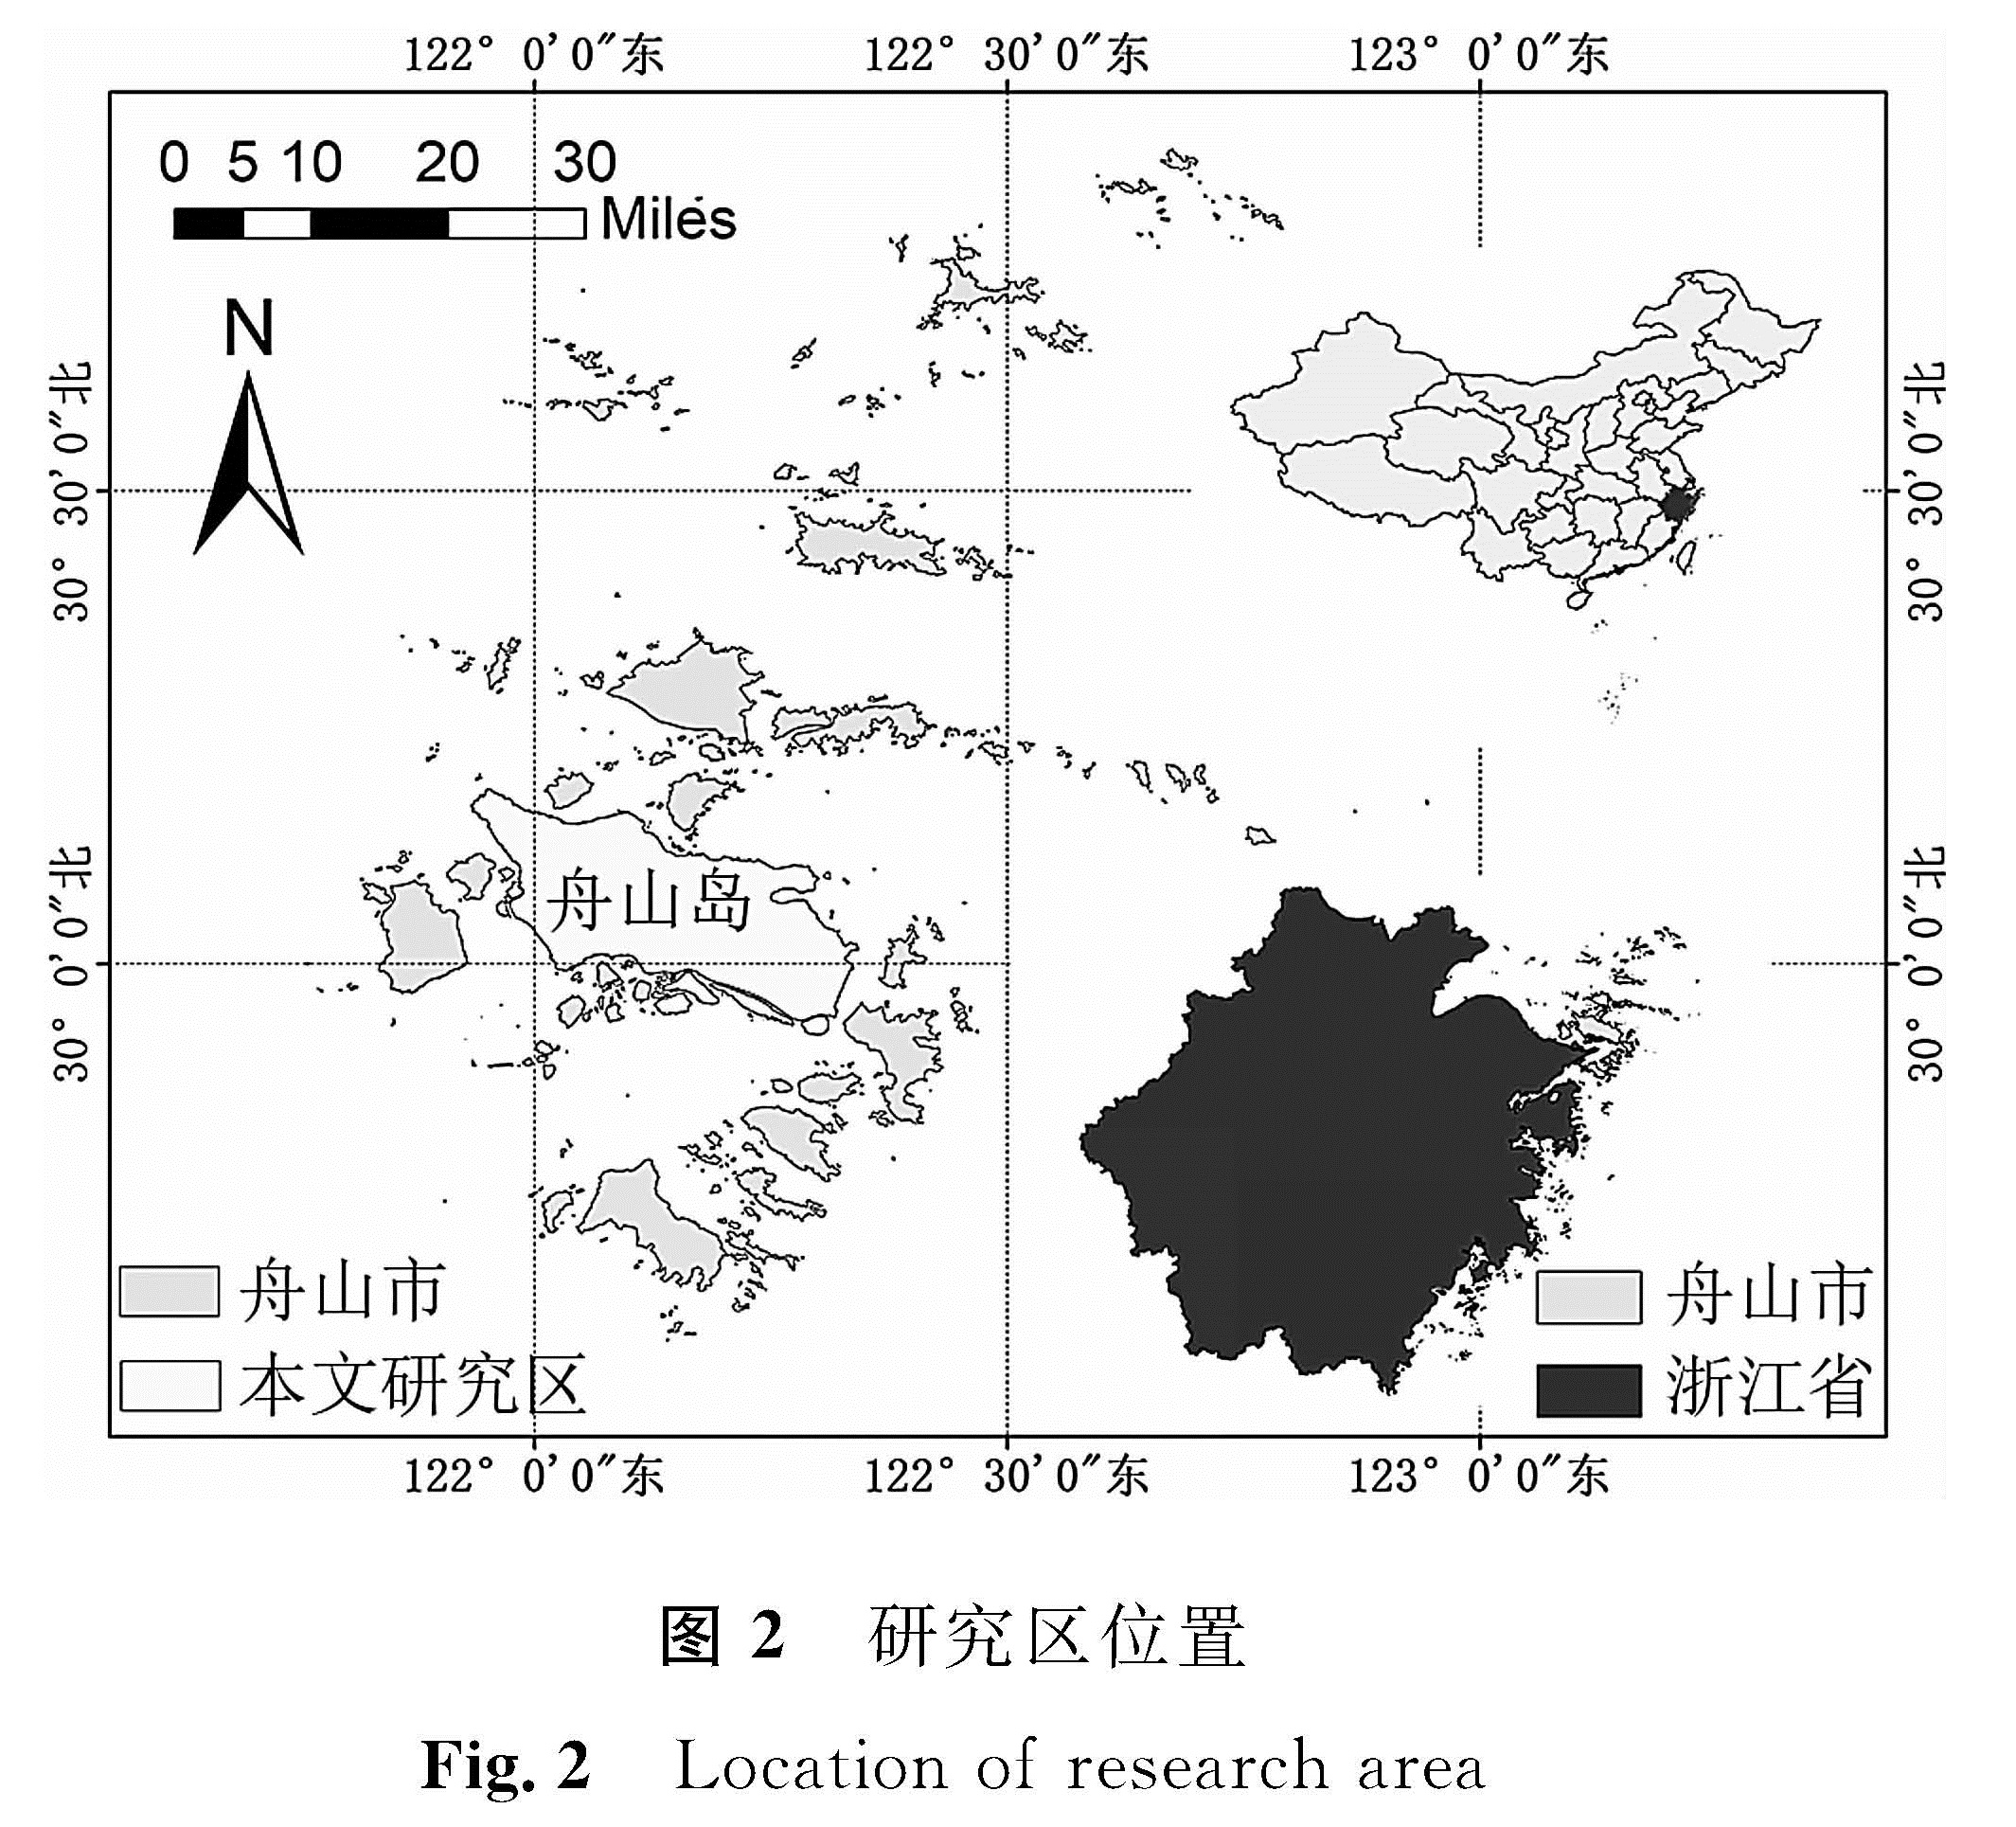 图2 研究区位置<br/>Fig.2 Location of research area